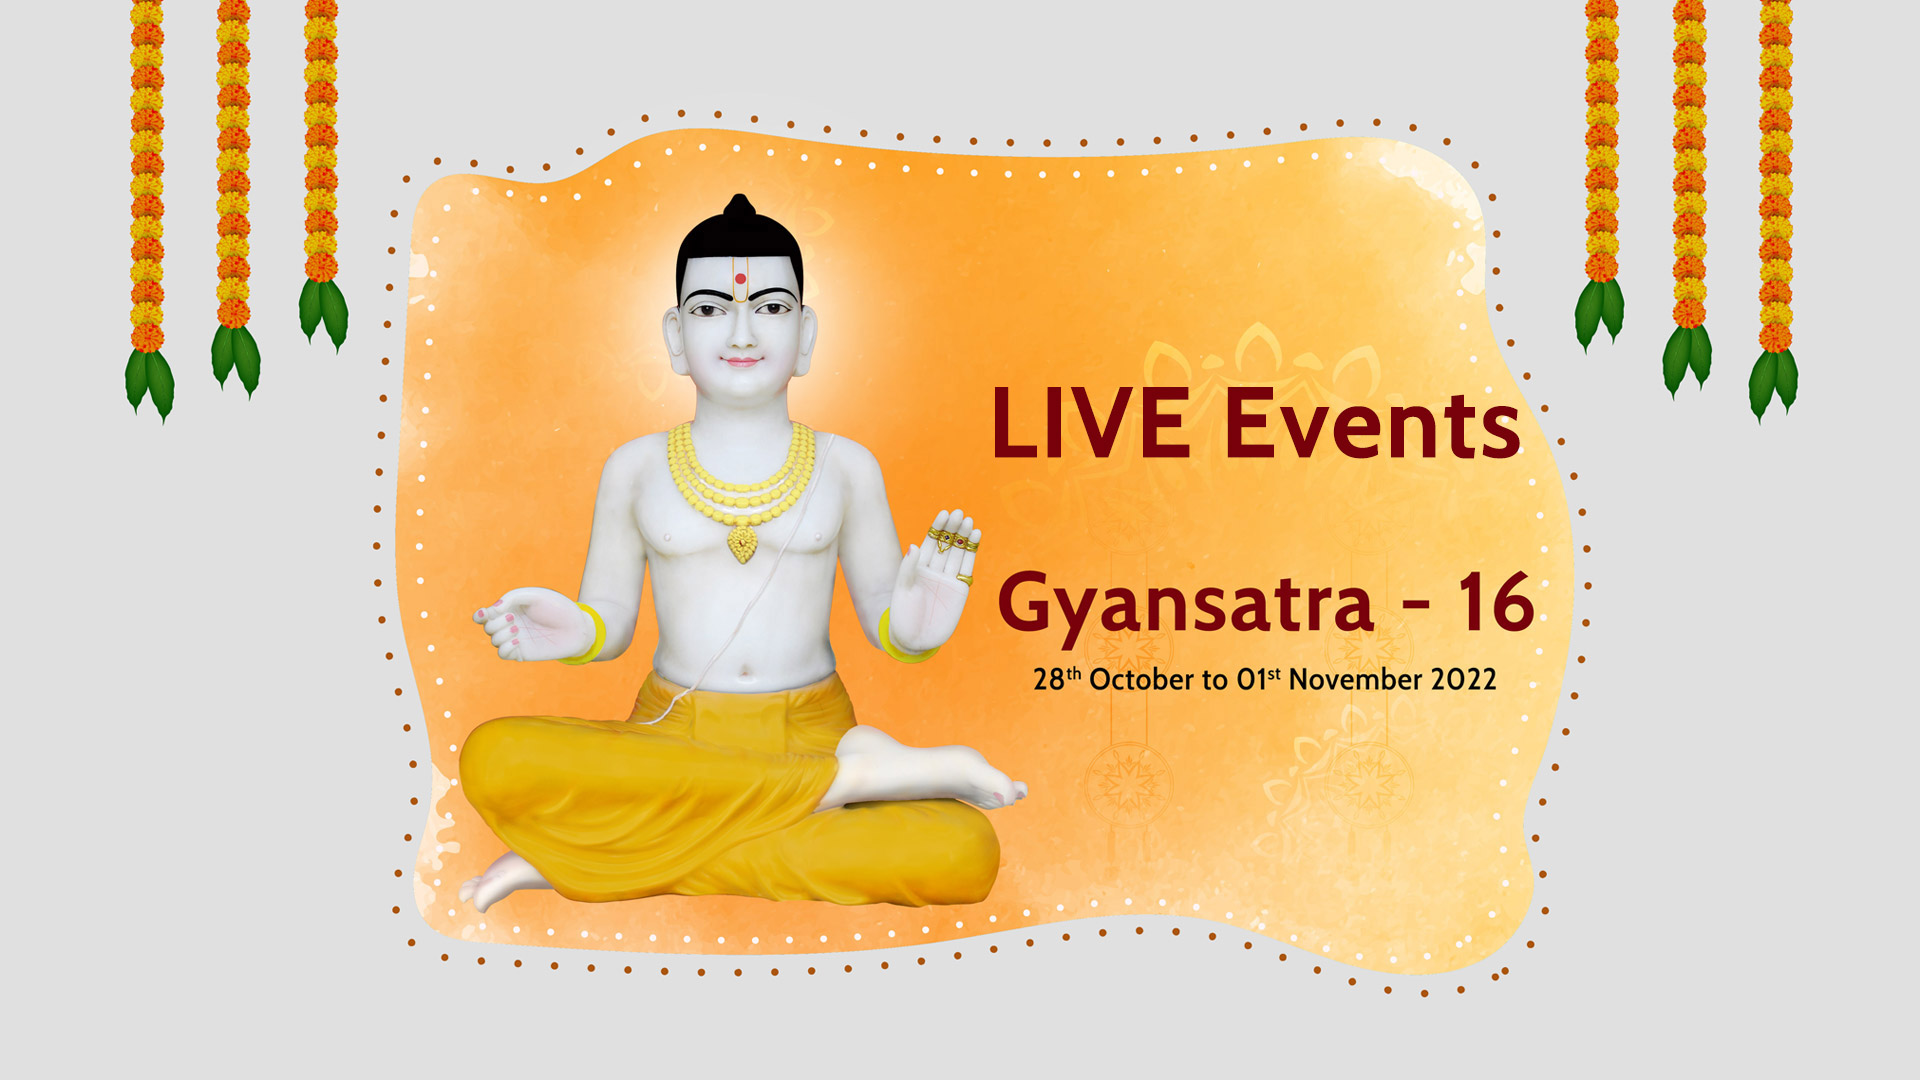 Gyansatra LIVE Events